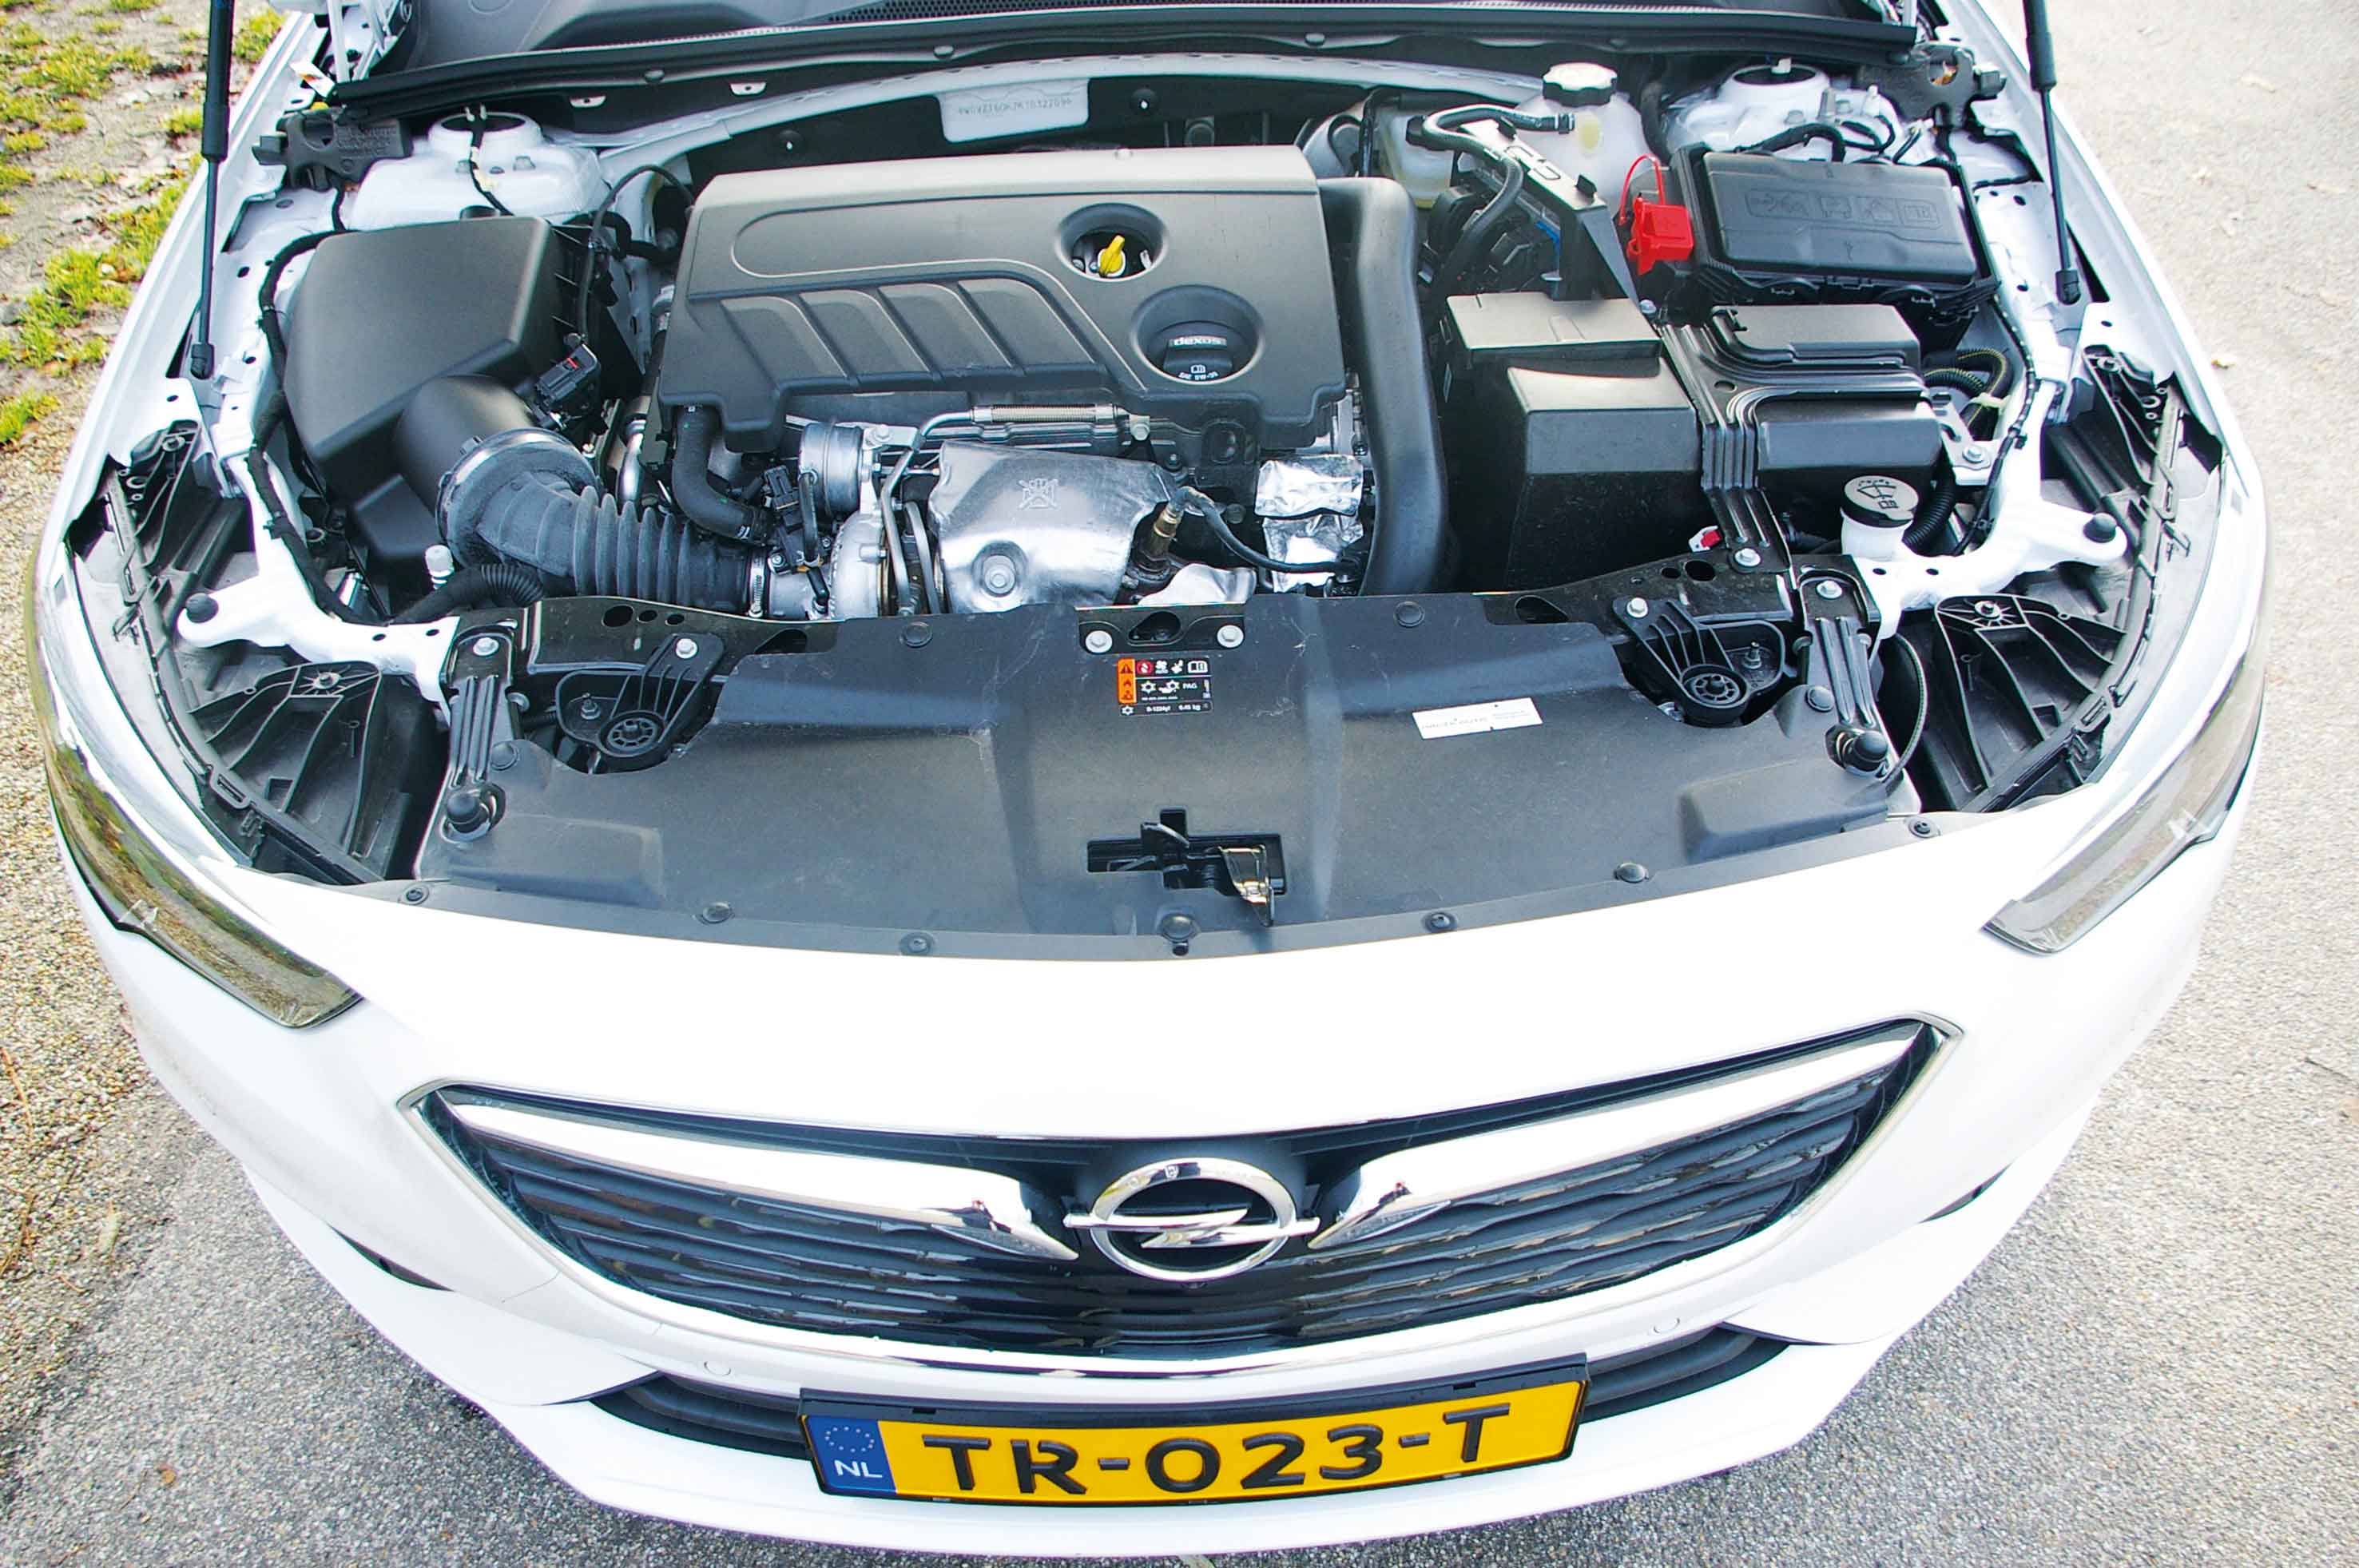 Opel-Insignia-motor